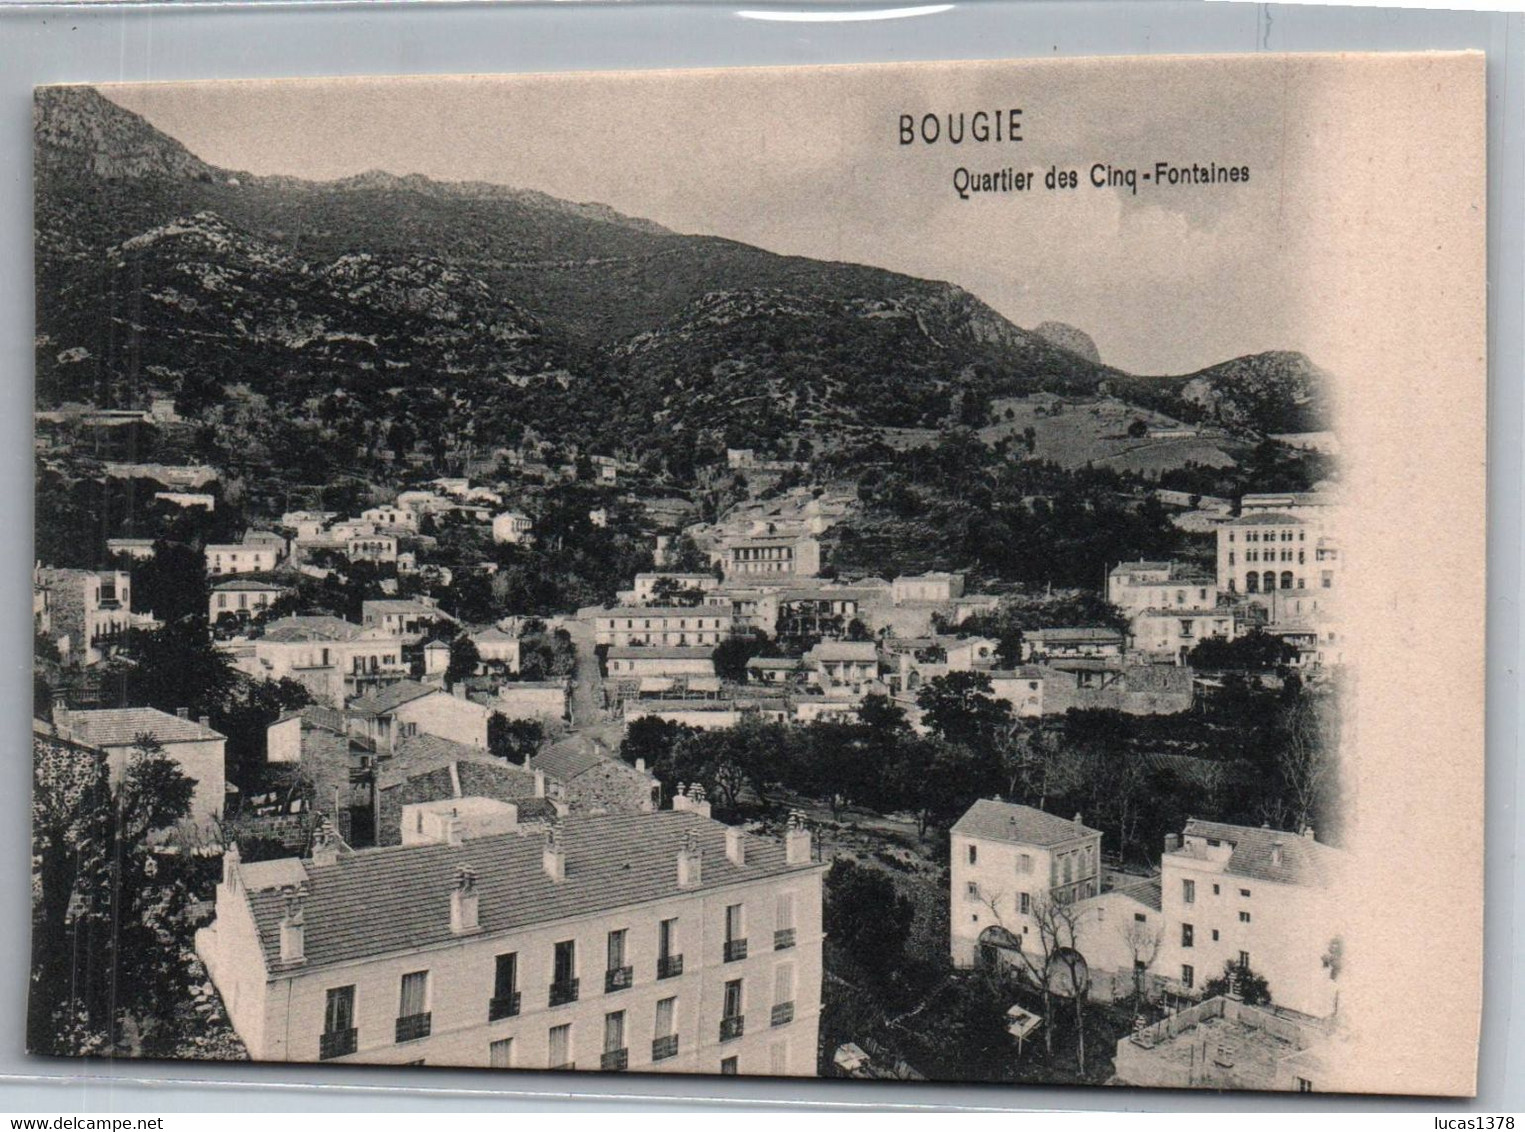 BOUGIE / QUARTIER DES CINQ FONTAINES - Bejaia (Bougie)